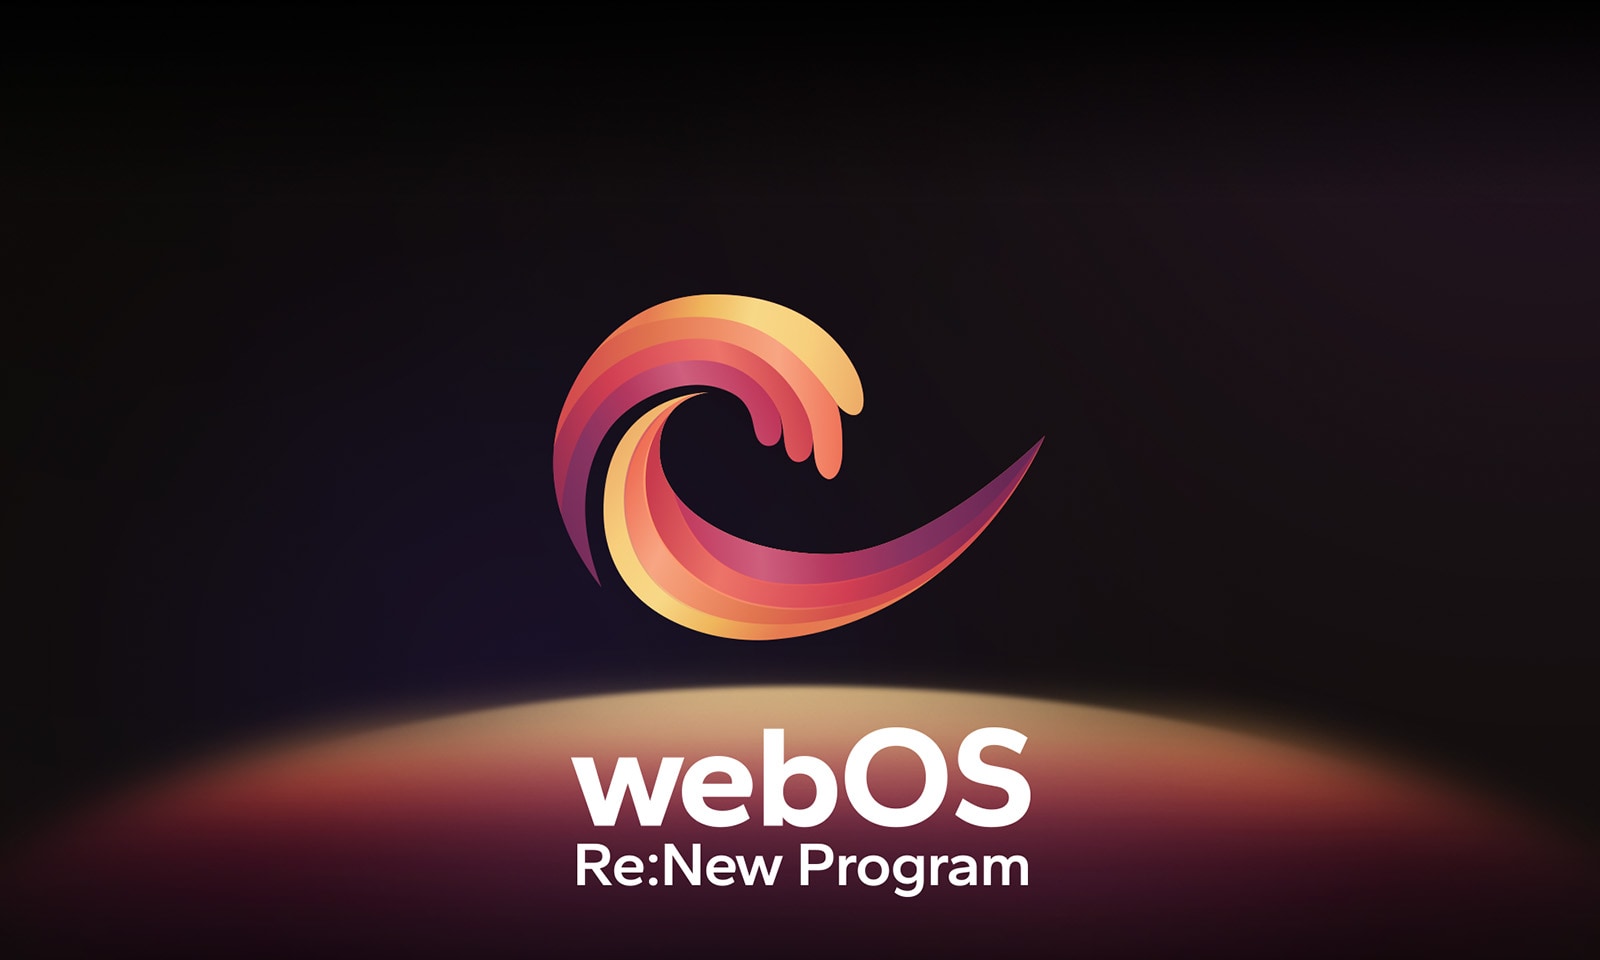 Mustan taustan keskellä on webOS-logo, ja sen alapuolella olevaa tilaa valaisevat logon punaiset, oranssit ja keltaiset värit. Logon alapuolella on teksti ”webOS Re:New Program”.